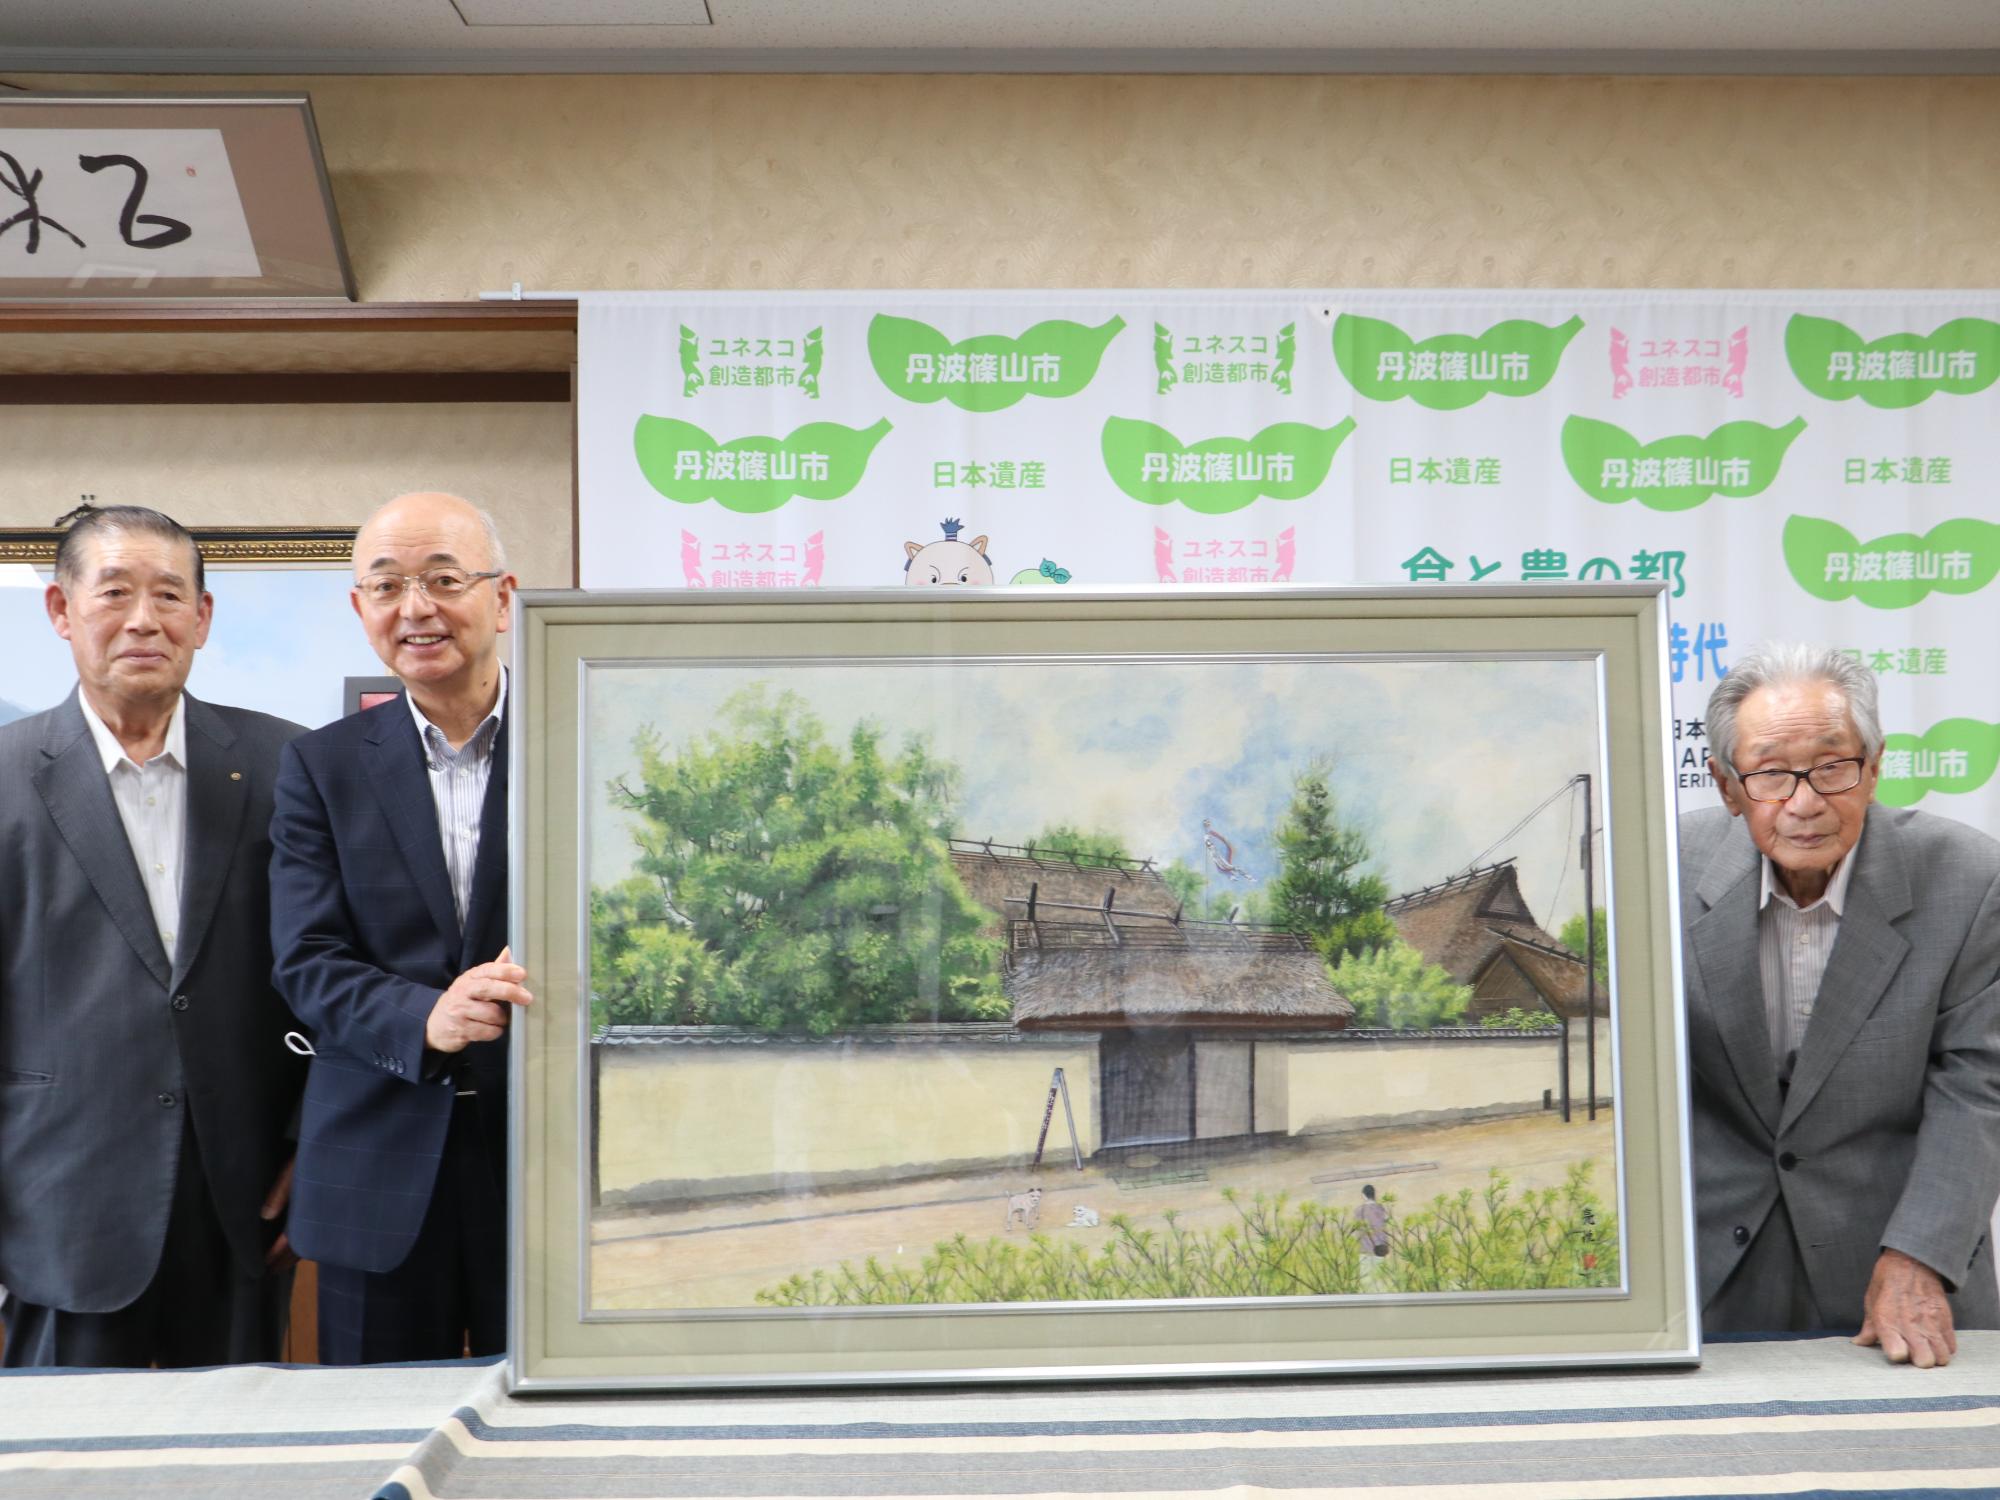 武家屋敷を描いた日本画の右隣に男性が一人、左隣に男性が二人立っている